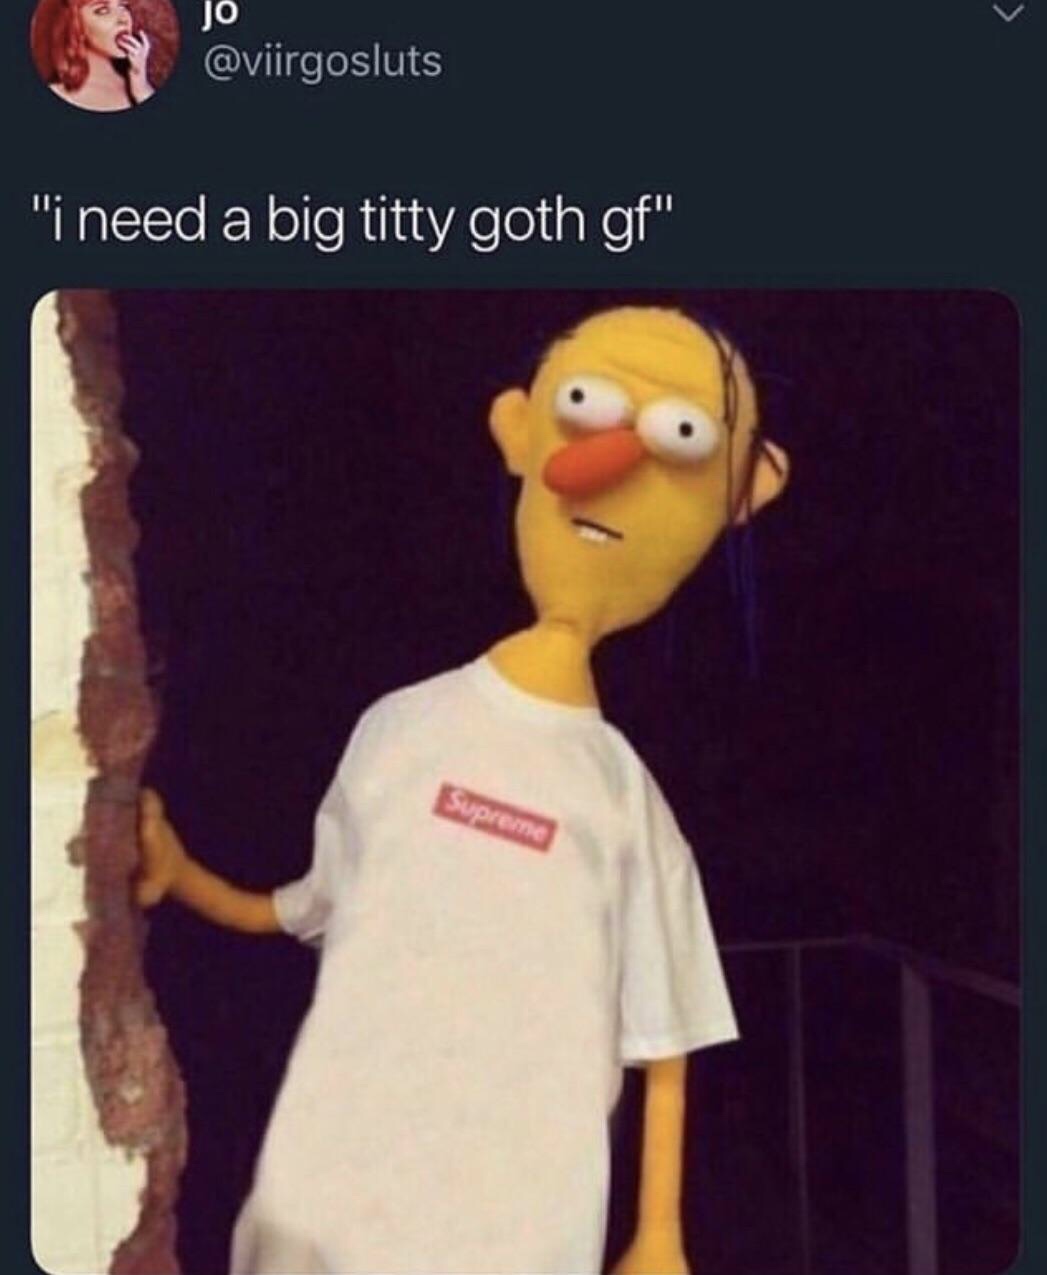 memes - big titty goth gf memes - jo Ti need a big titty goth gf"